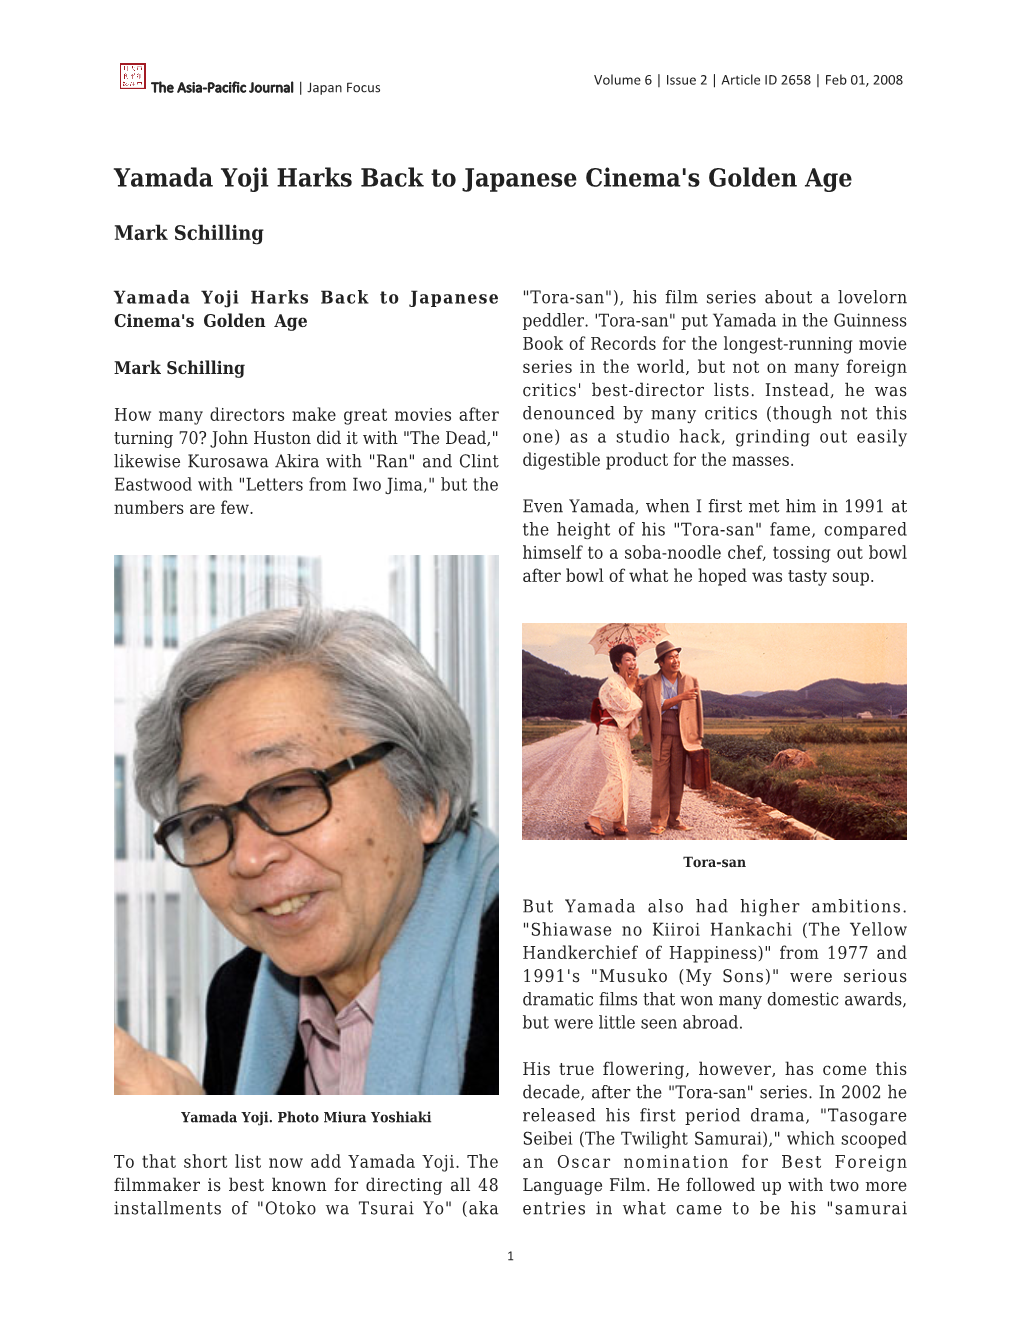 Yamada Yoji Harks Back to Japanese Cinema's Golden Age